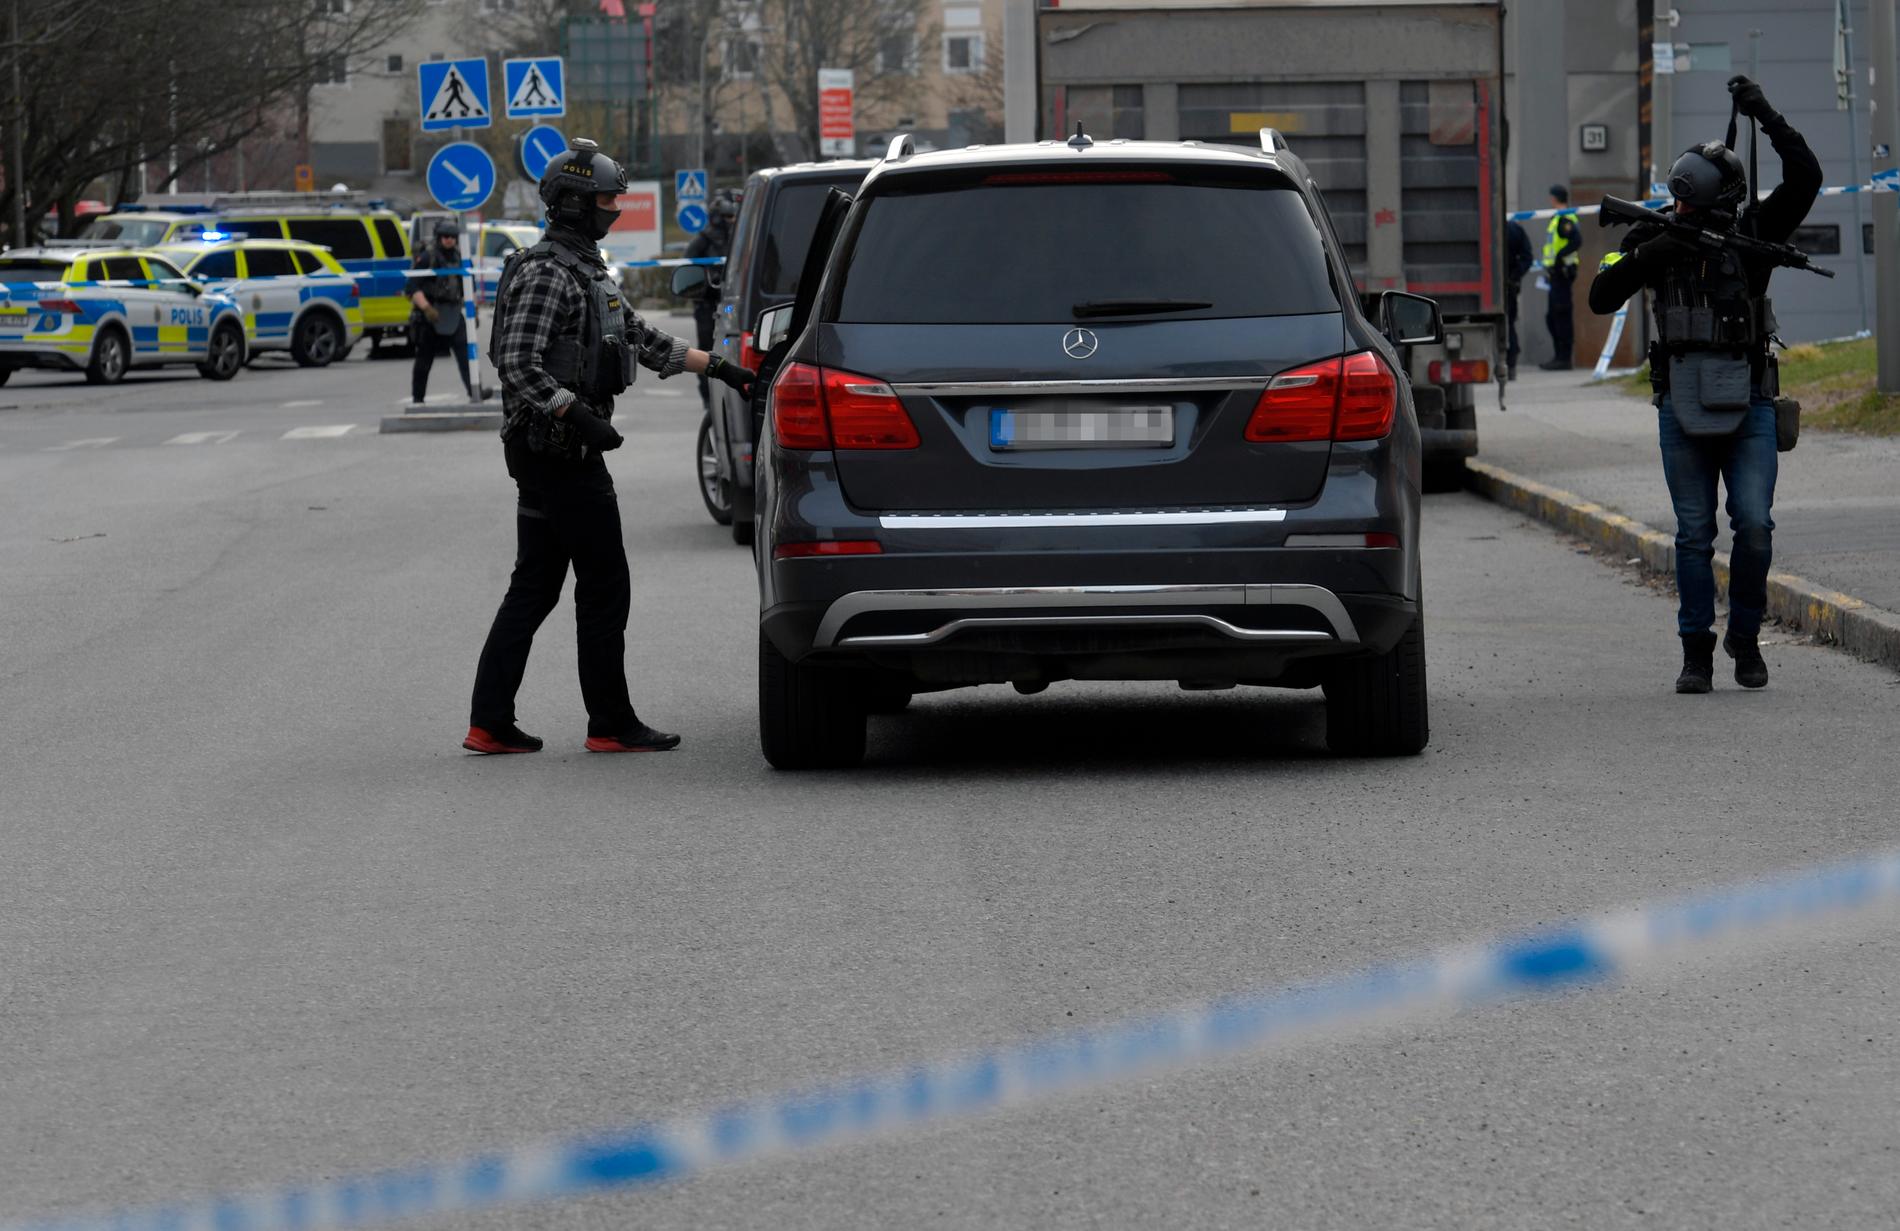 En stor polisinsats pågår just nu efter en skottlossning i Vällingby i västra Stockholm.